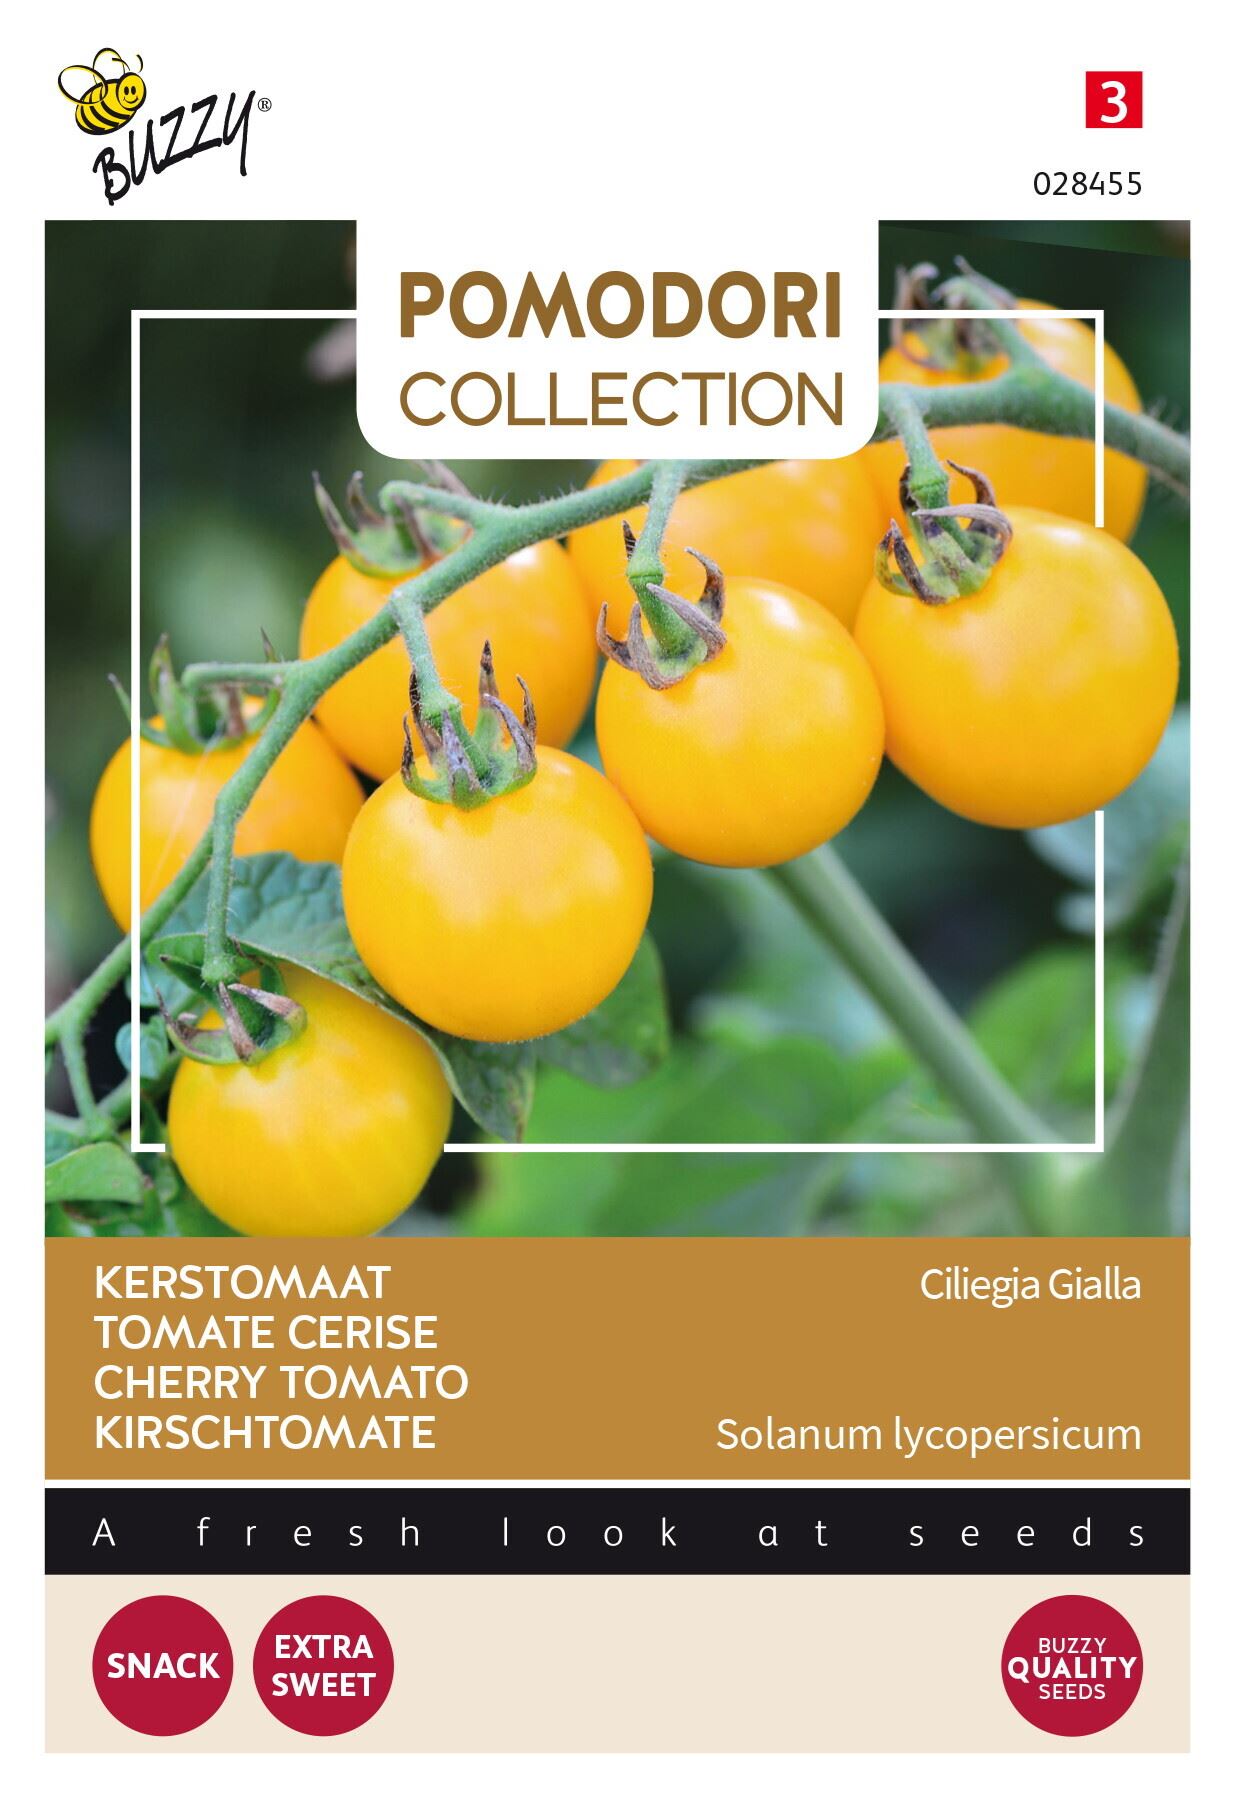 Buzzy-Pomodori-Ciliegia-Gialla